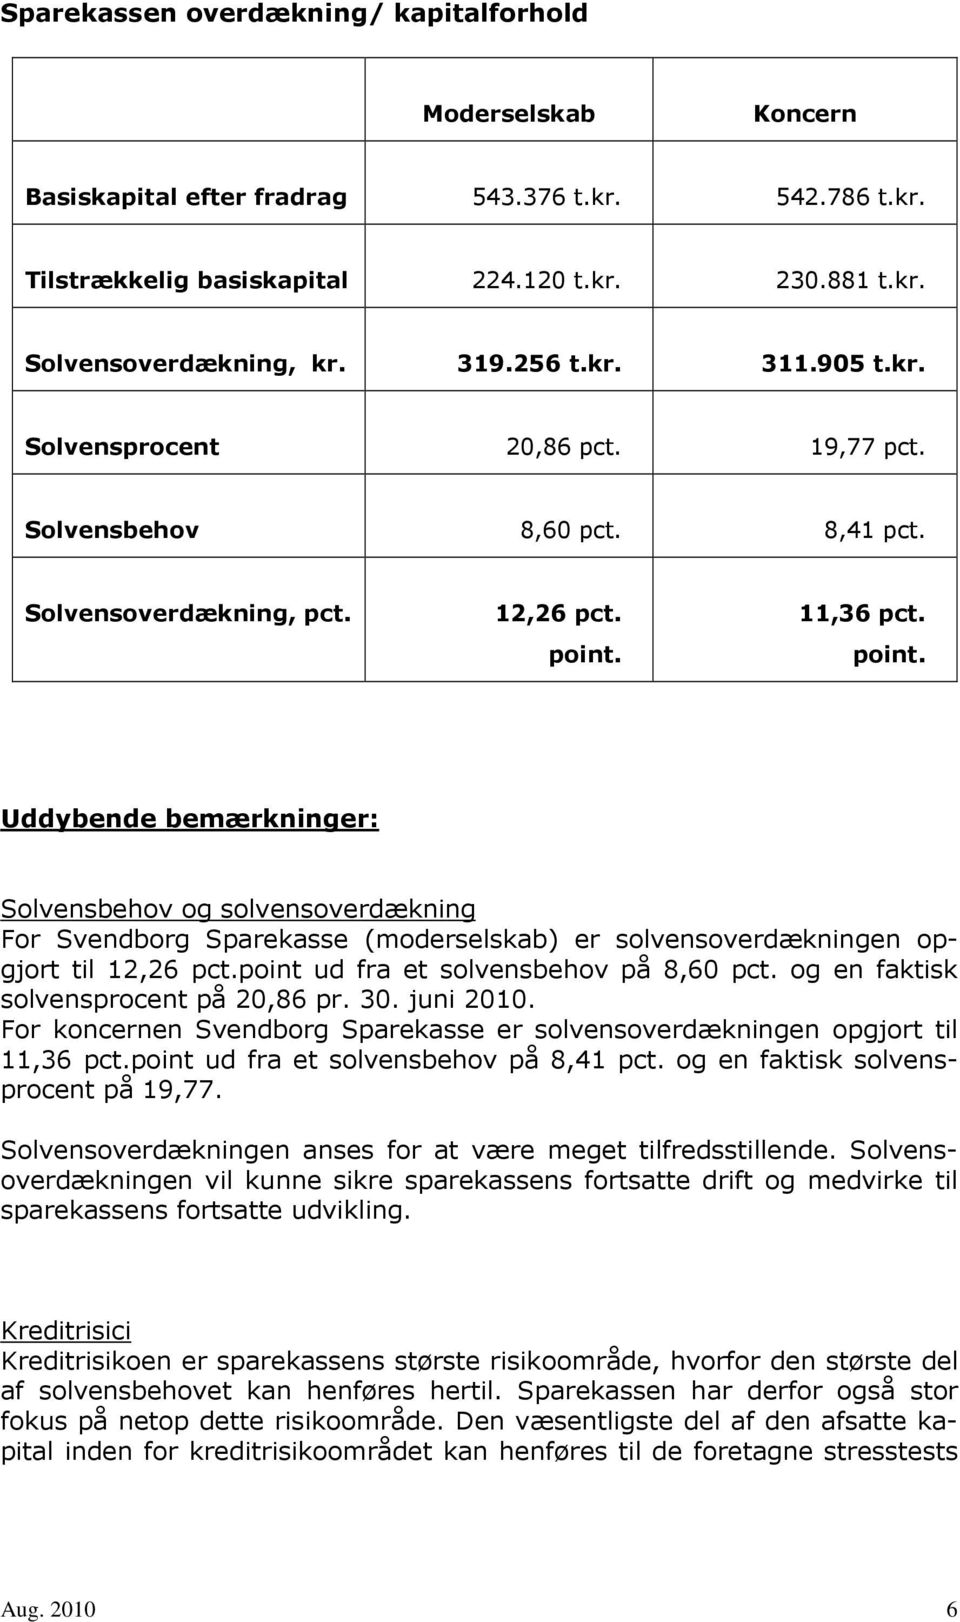 11,36 pct. point. Uddybende bemærkninger: Solvensbehov og solvensoverdækning For Svendborg Sparekasse (moderselskab) er solvensoverdækningen opgjort til 12,26 pct.